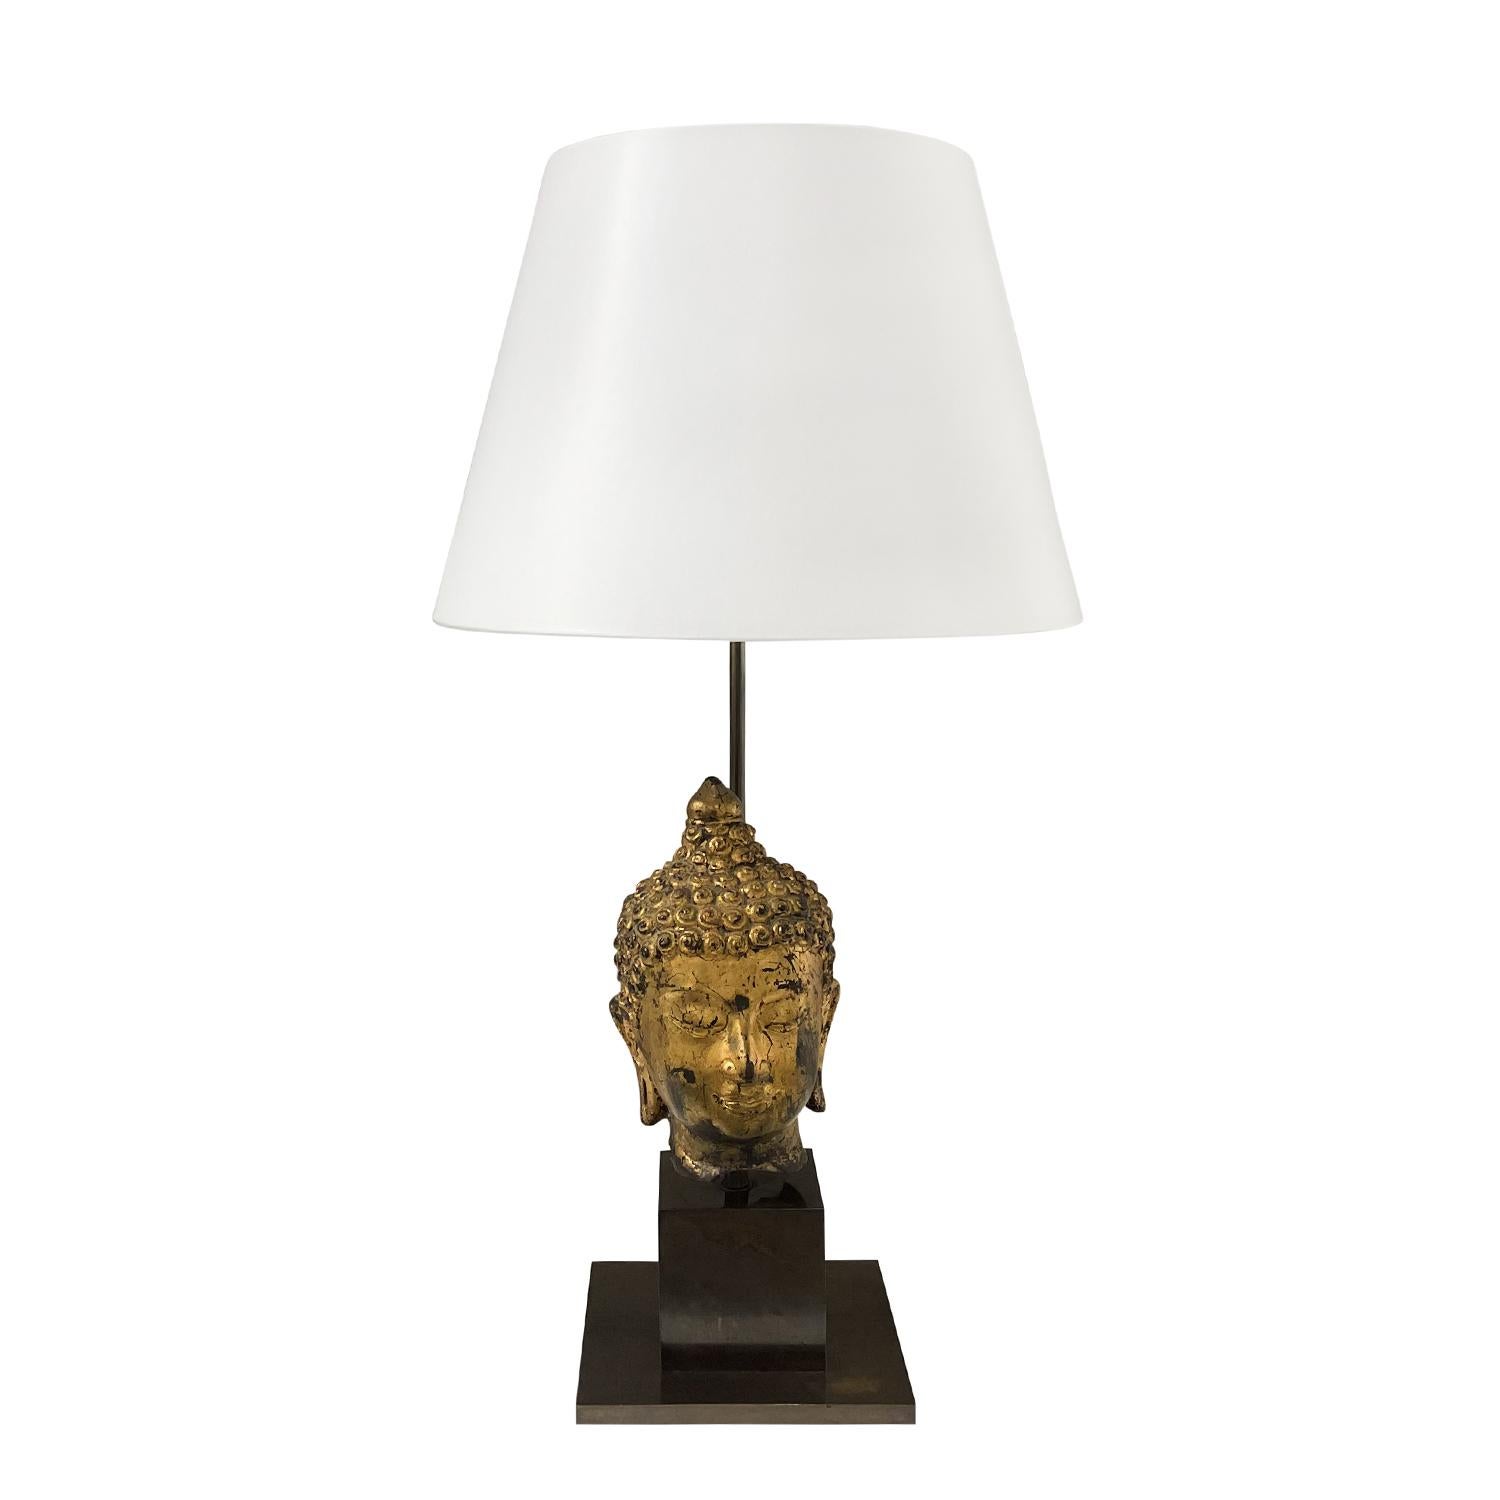 Lampe de table asiatique en forme de bouddha, de style moderne du milieu du siècle dernier, avec un nouvel abat-jour rond blanc, faite de bois travaillé à la main, en bon état. La tête détaillée, patinée à l'or, est soutenue par une base